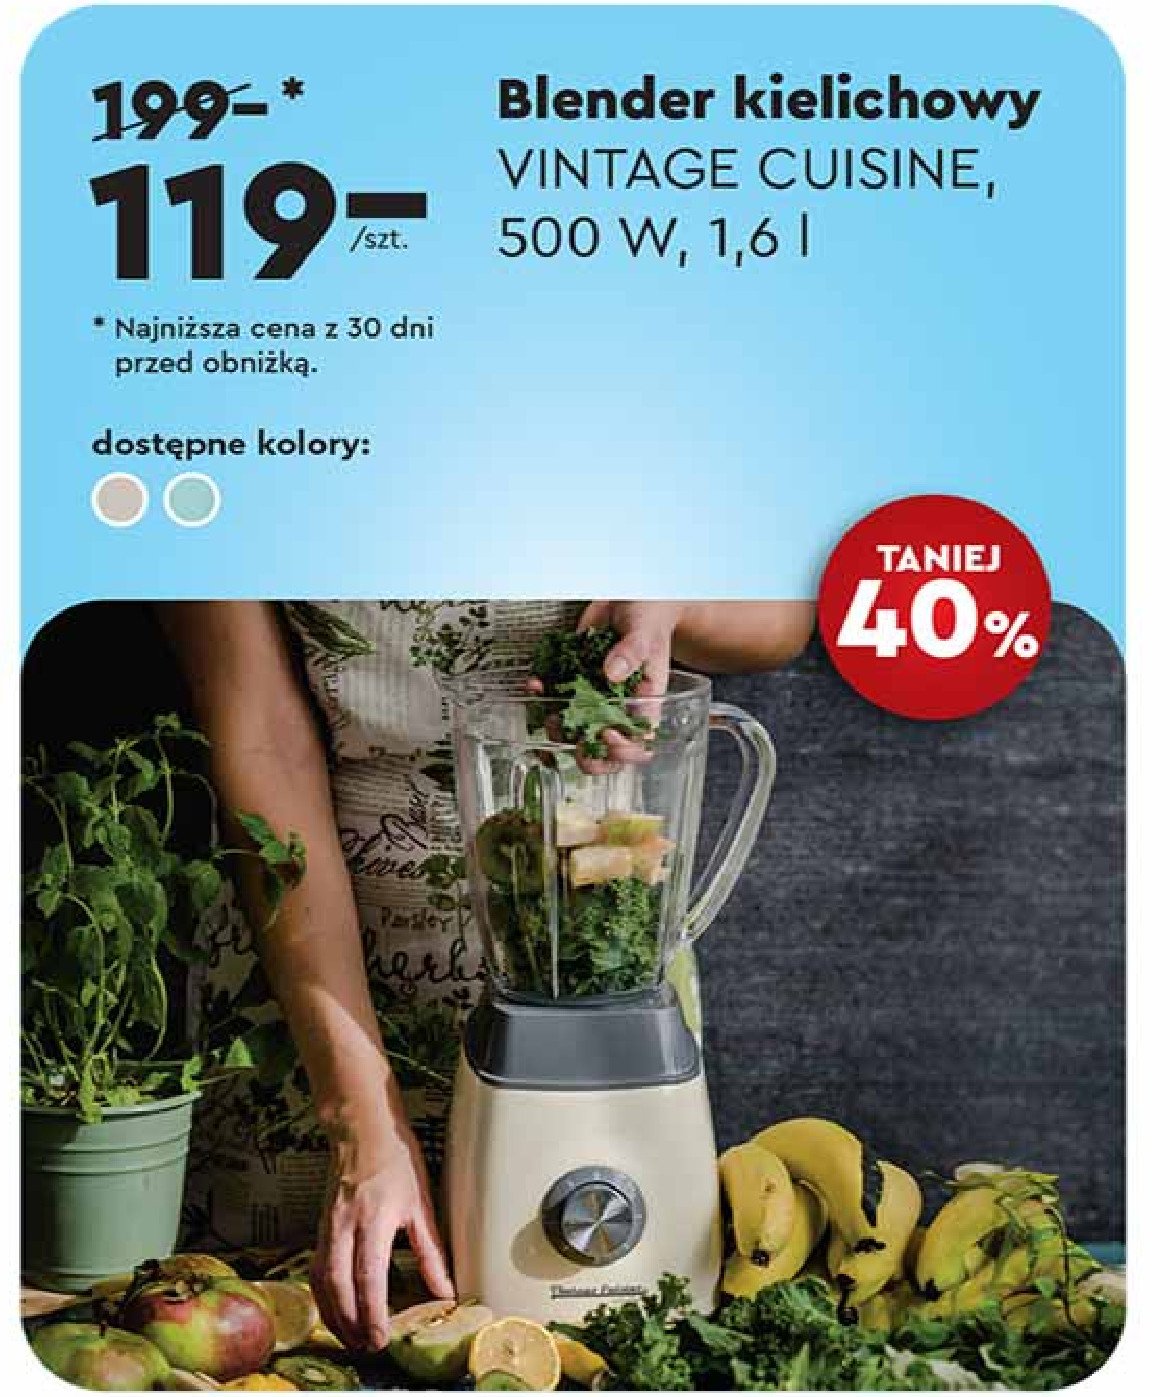 Blender 500 w Vintage cuisine by cooking promocja w Biedronka